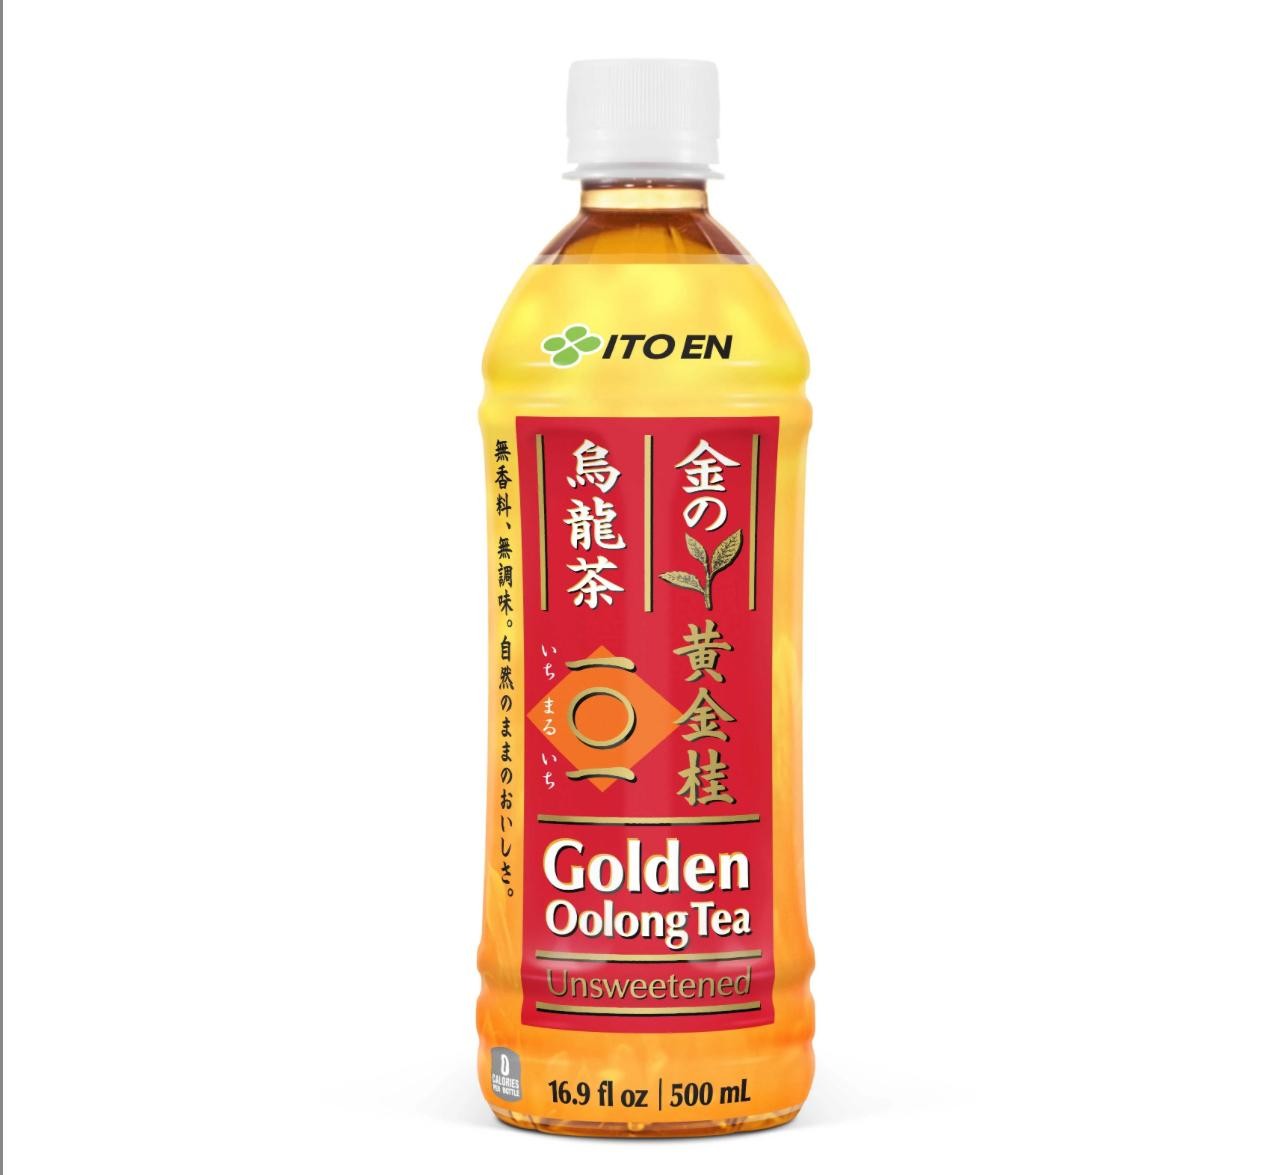 Ito En Tea Golden Oolong Tea